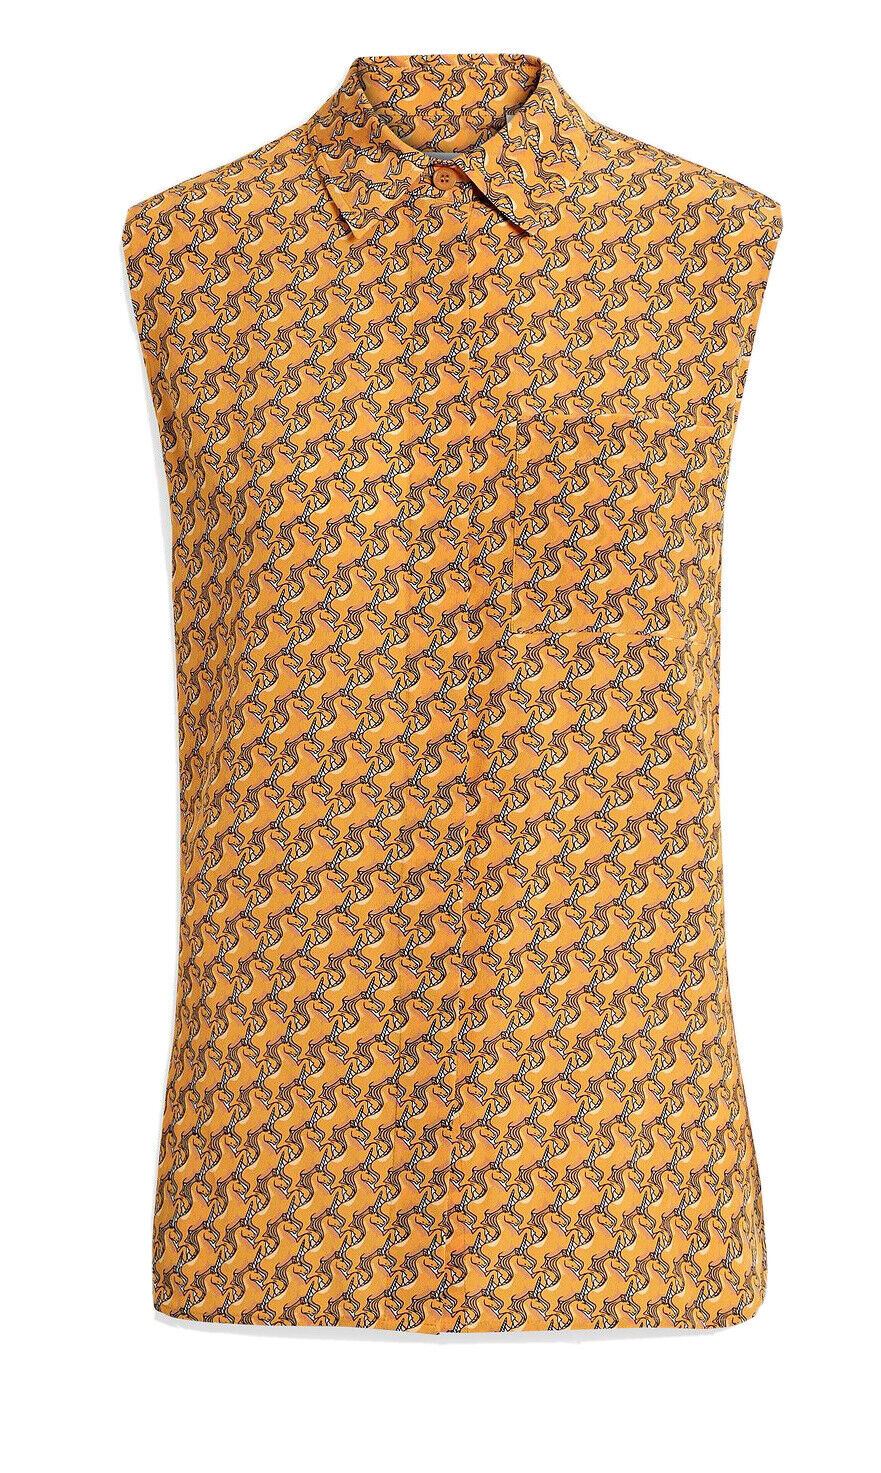 Женская рубашка на пуговицах яркого дынного цвета, NWT, 890 долларов США, Burberry, 6, США (8, Великобритания), 80324481